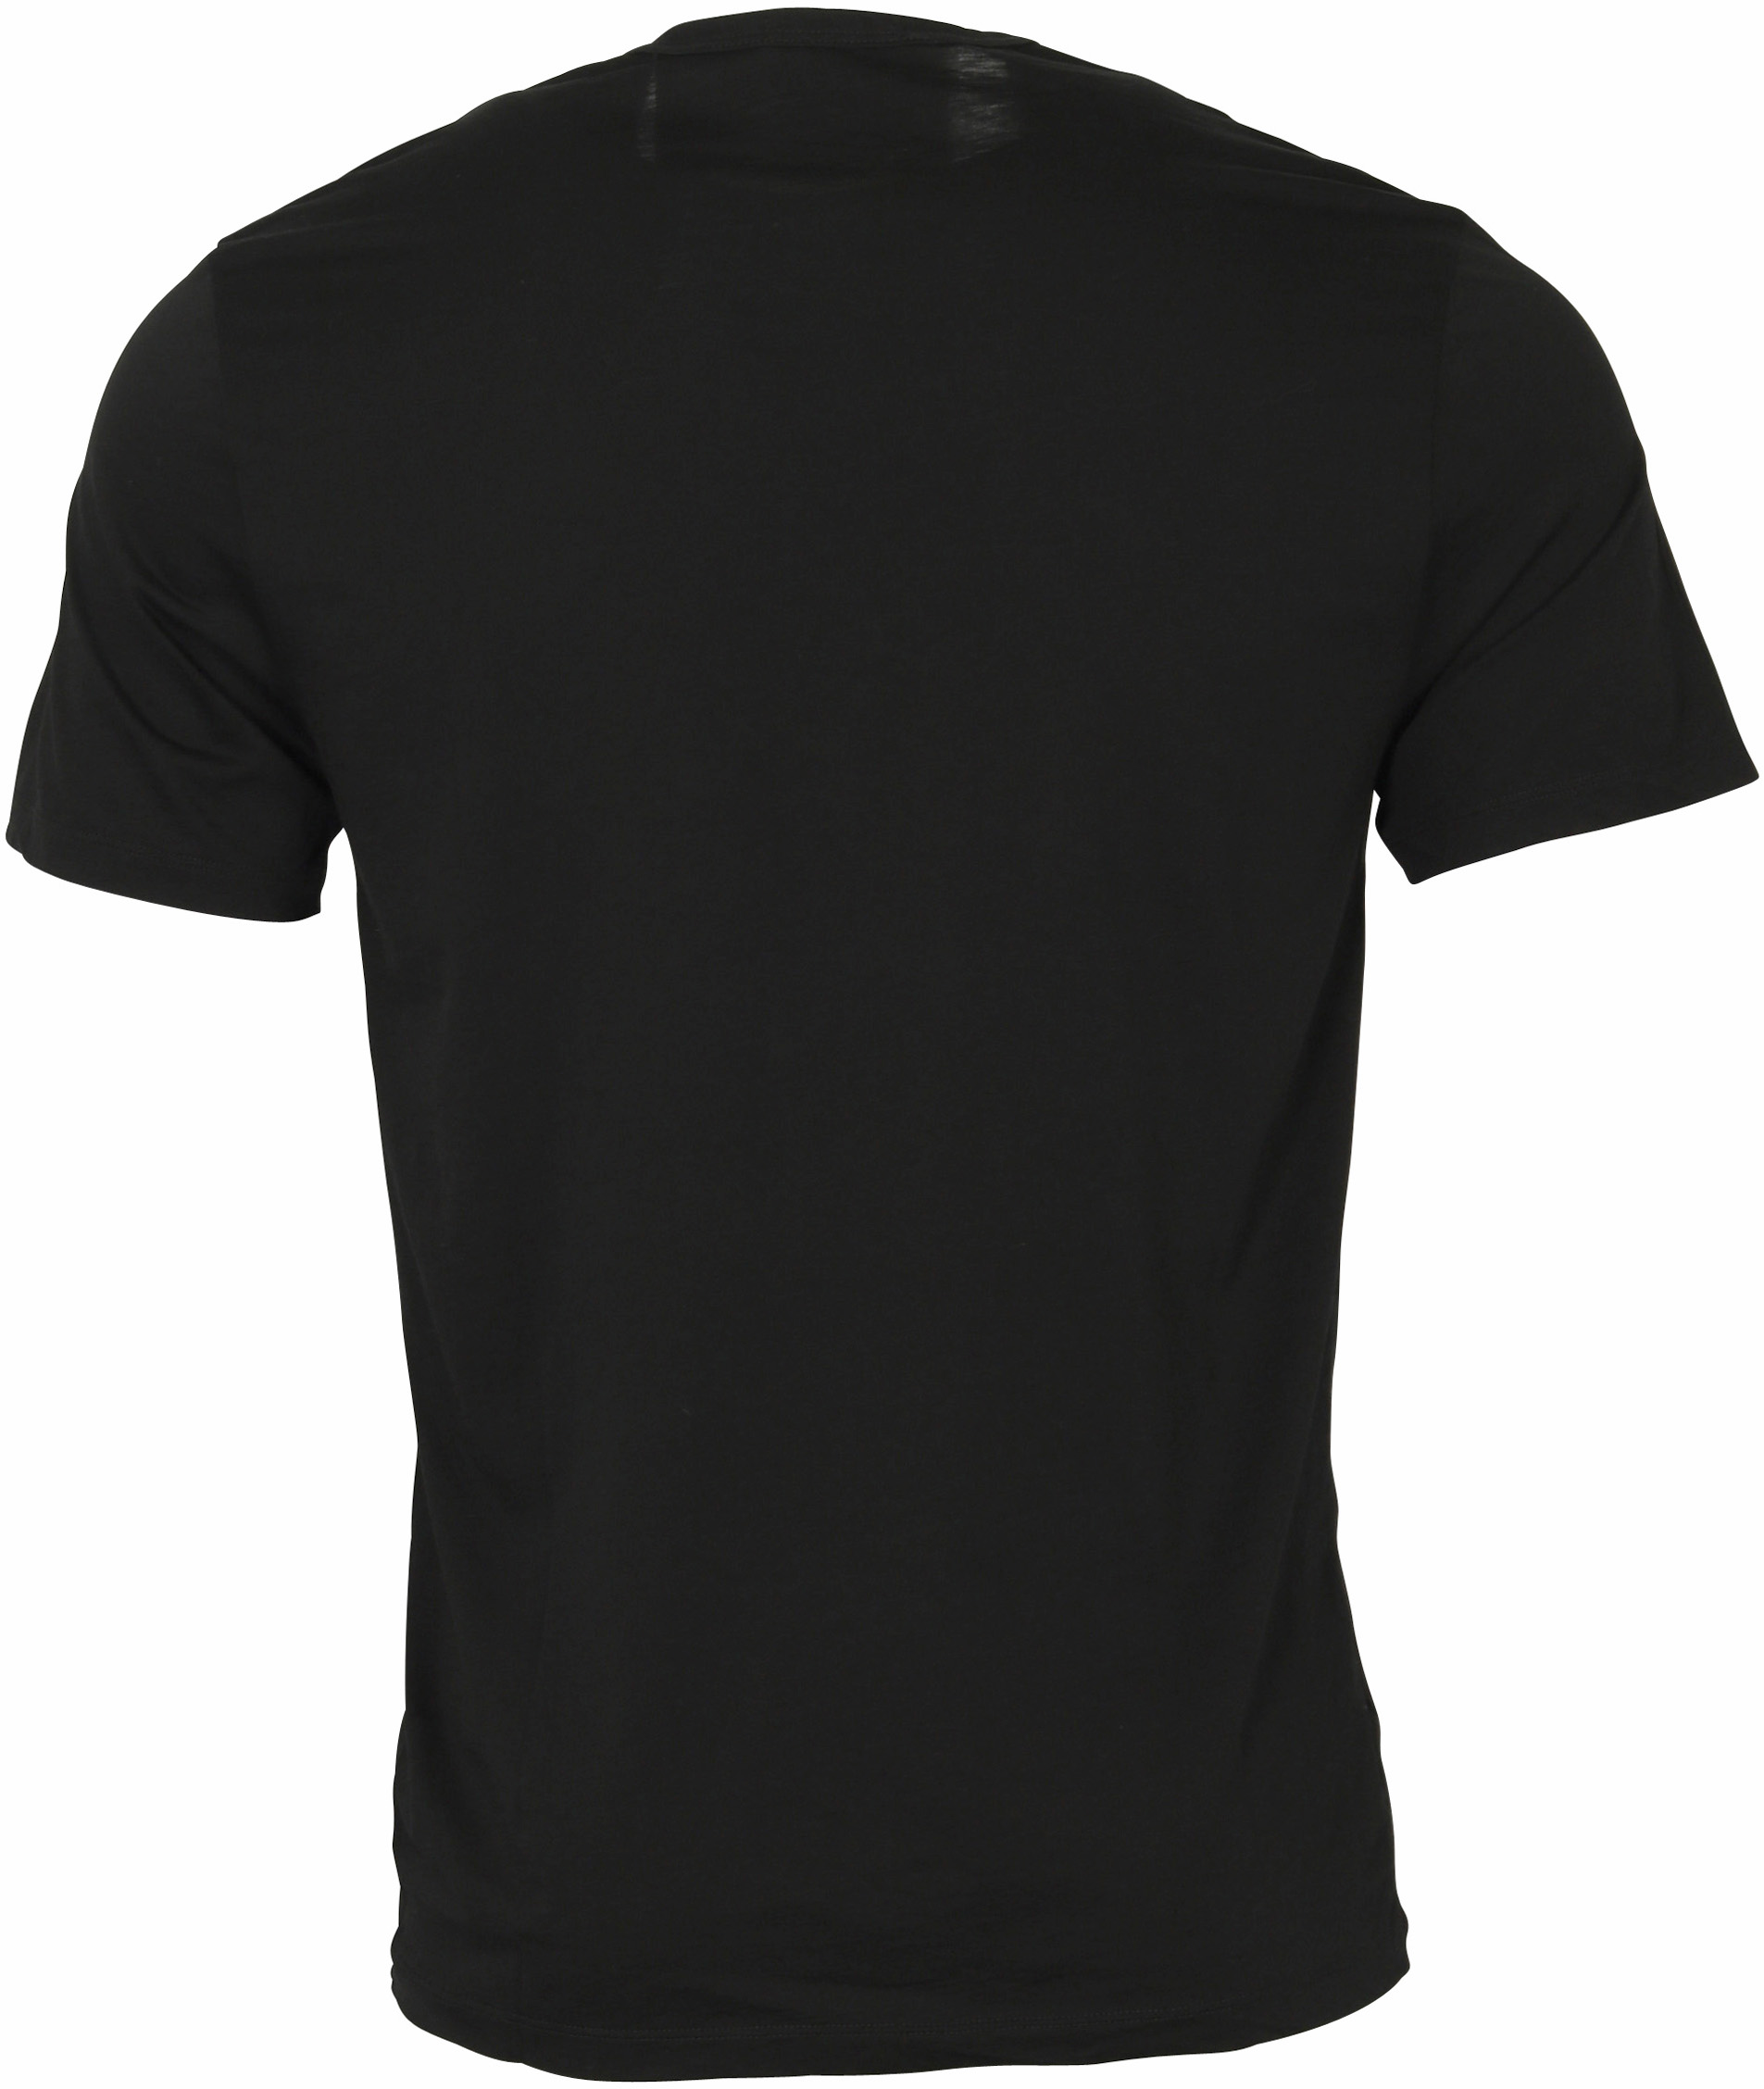 James Perse Cotton Cashmere T-Shirt Black M